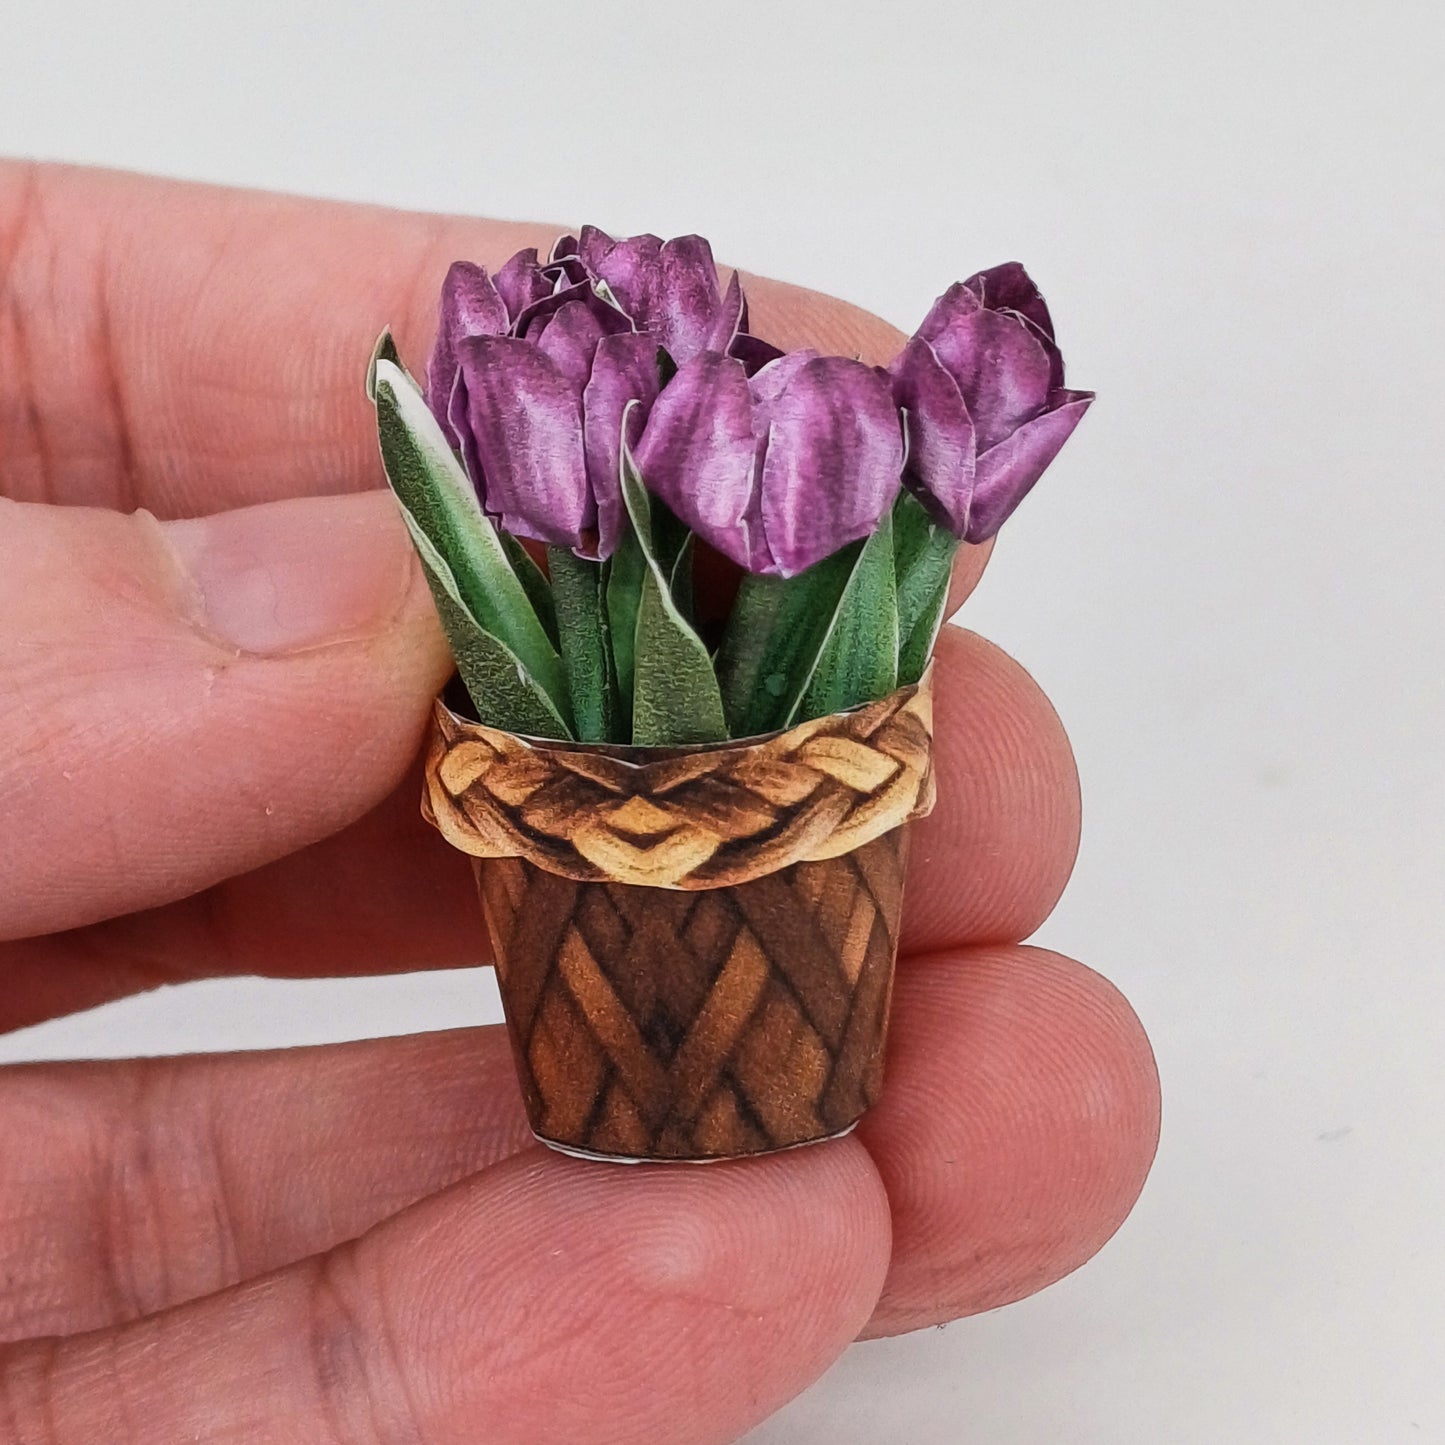 Miniatuur 1:12 schaal tulpen voor afdrukken en handwerk